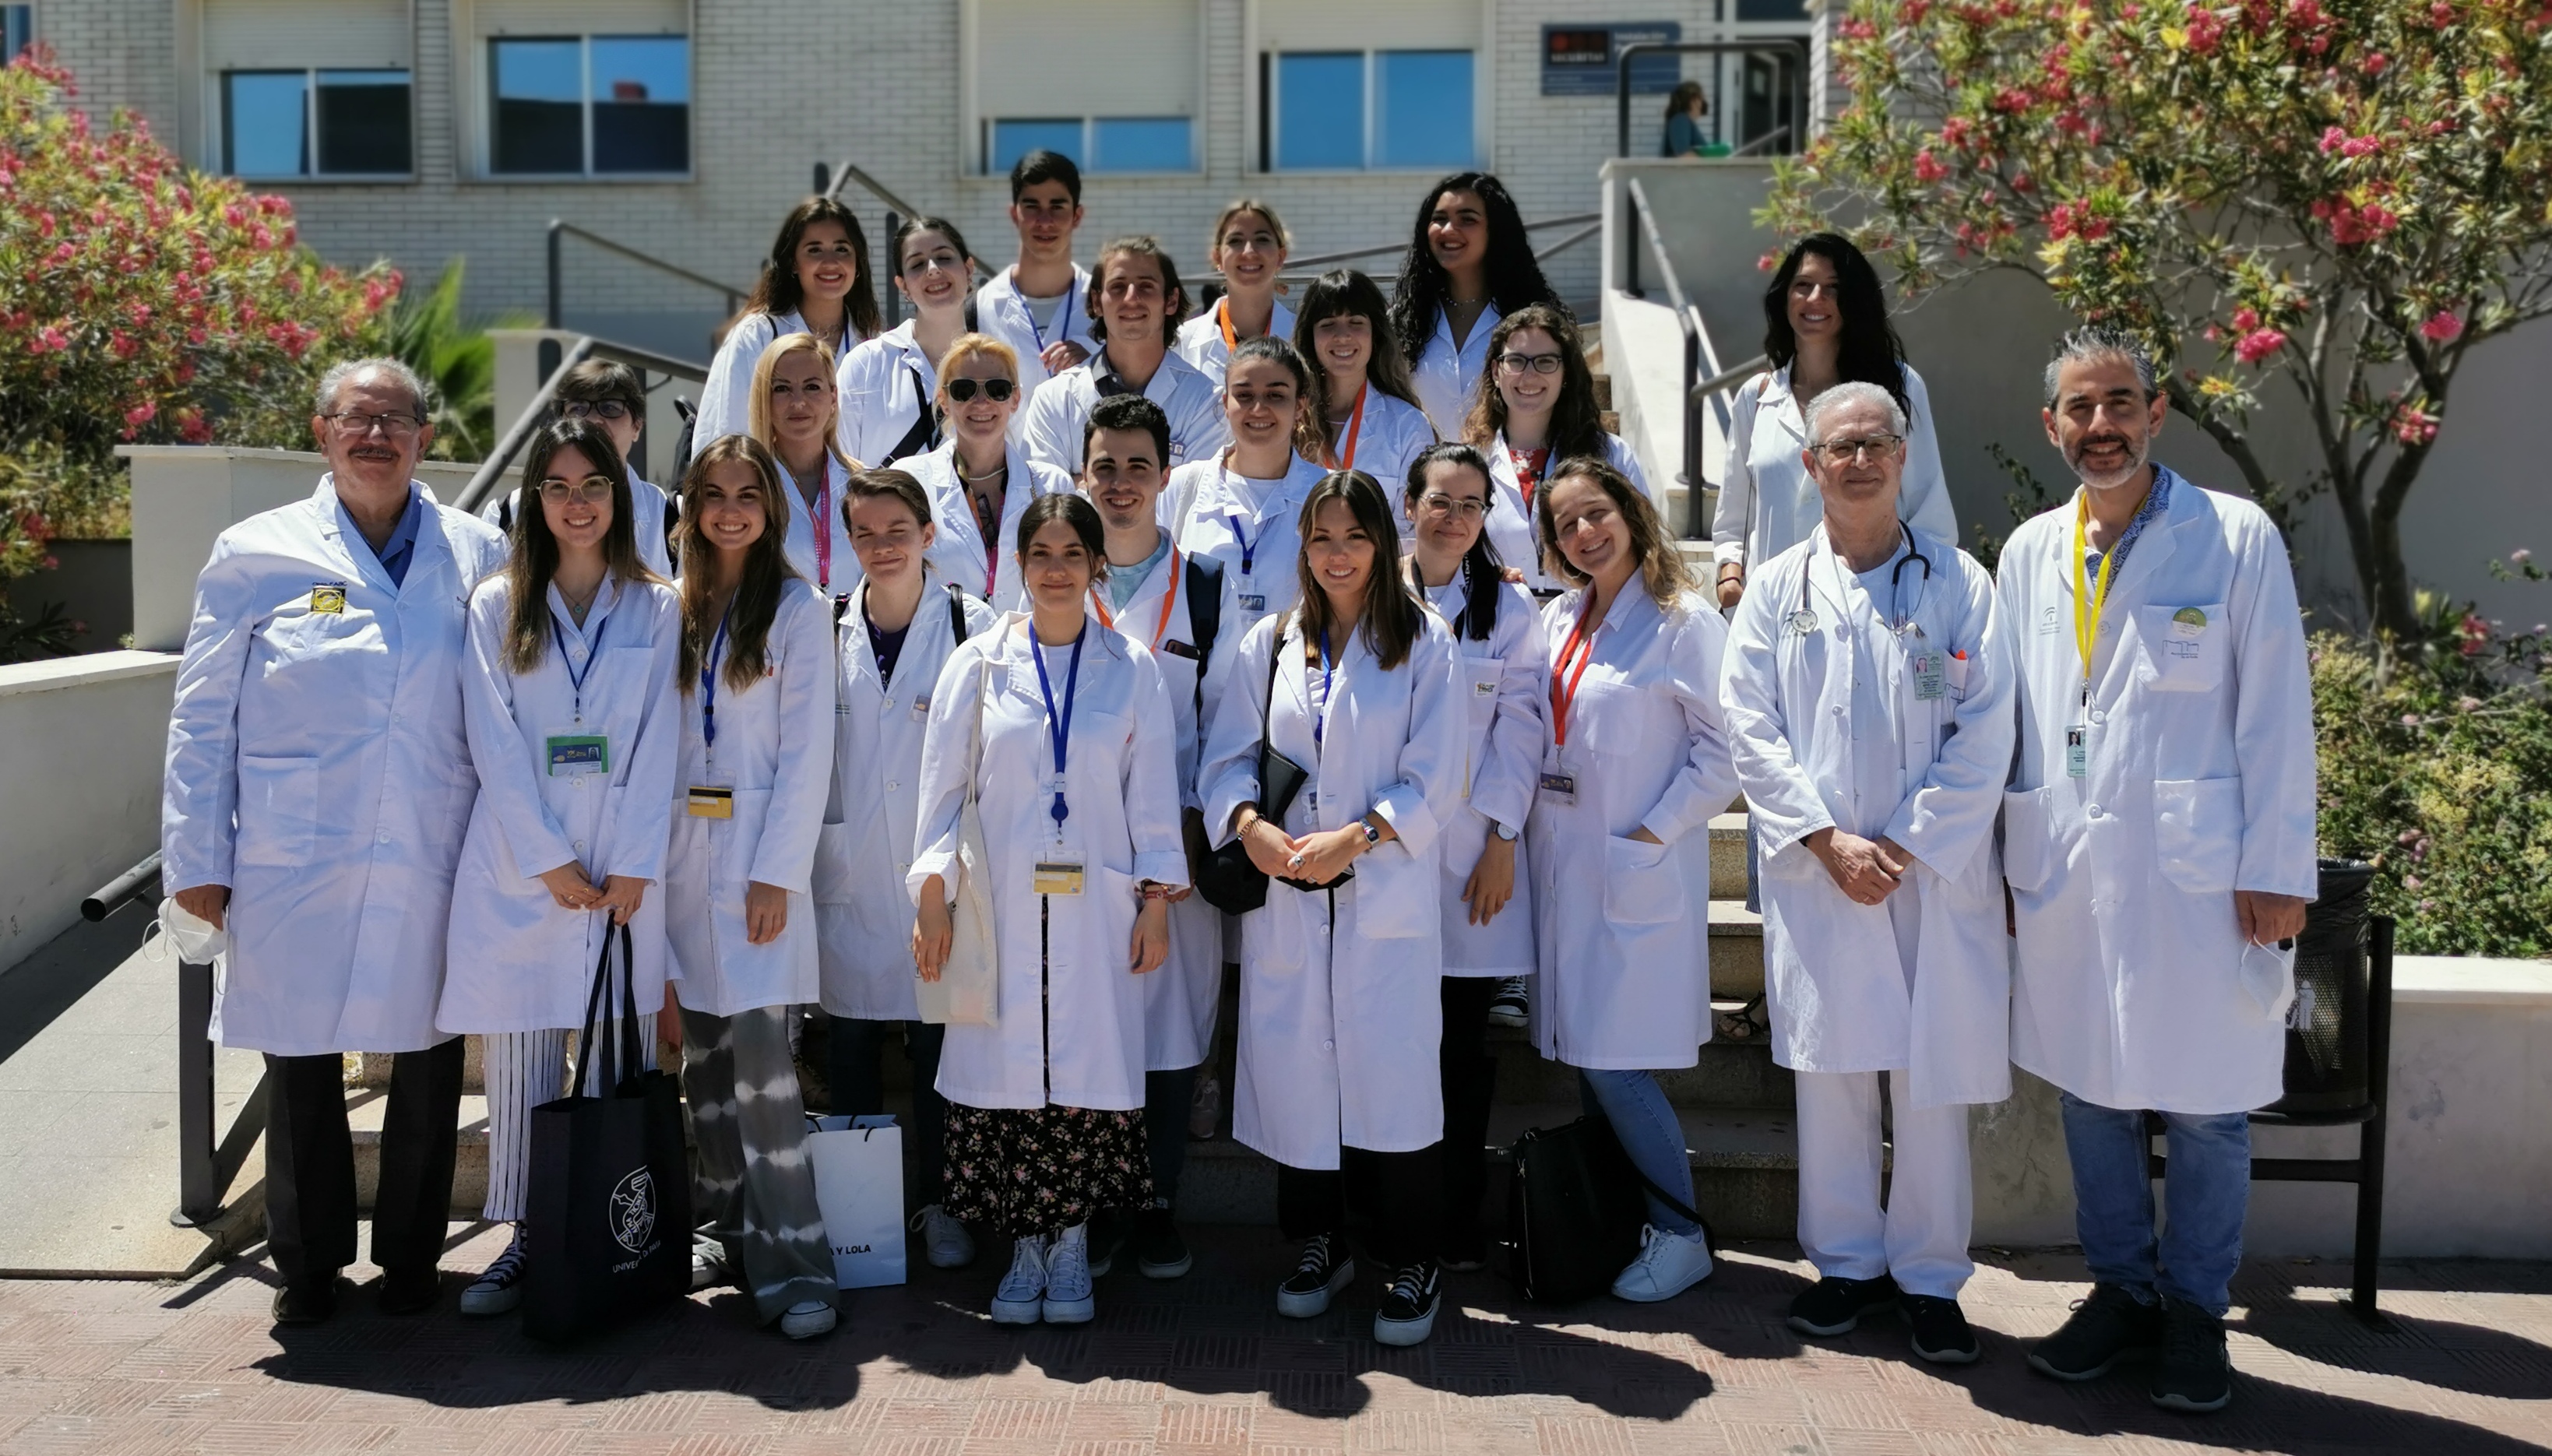 El servicio de Endocrinología y Nutrición del Hospital de Valme acoge la visita de alumnos de la Universidad Pablo de Olavide